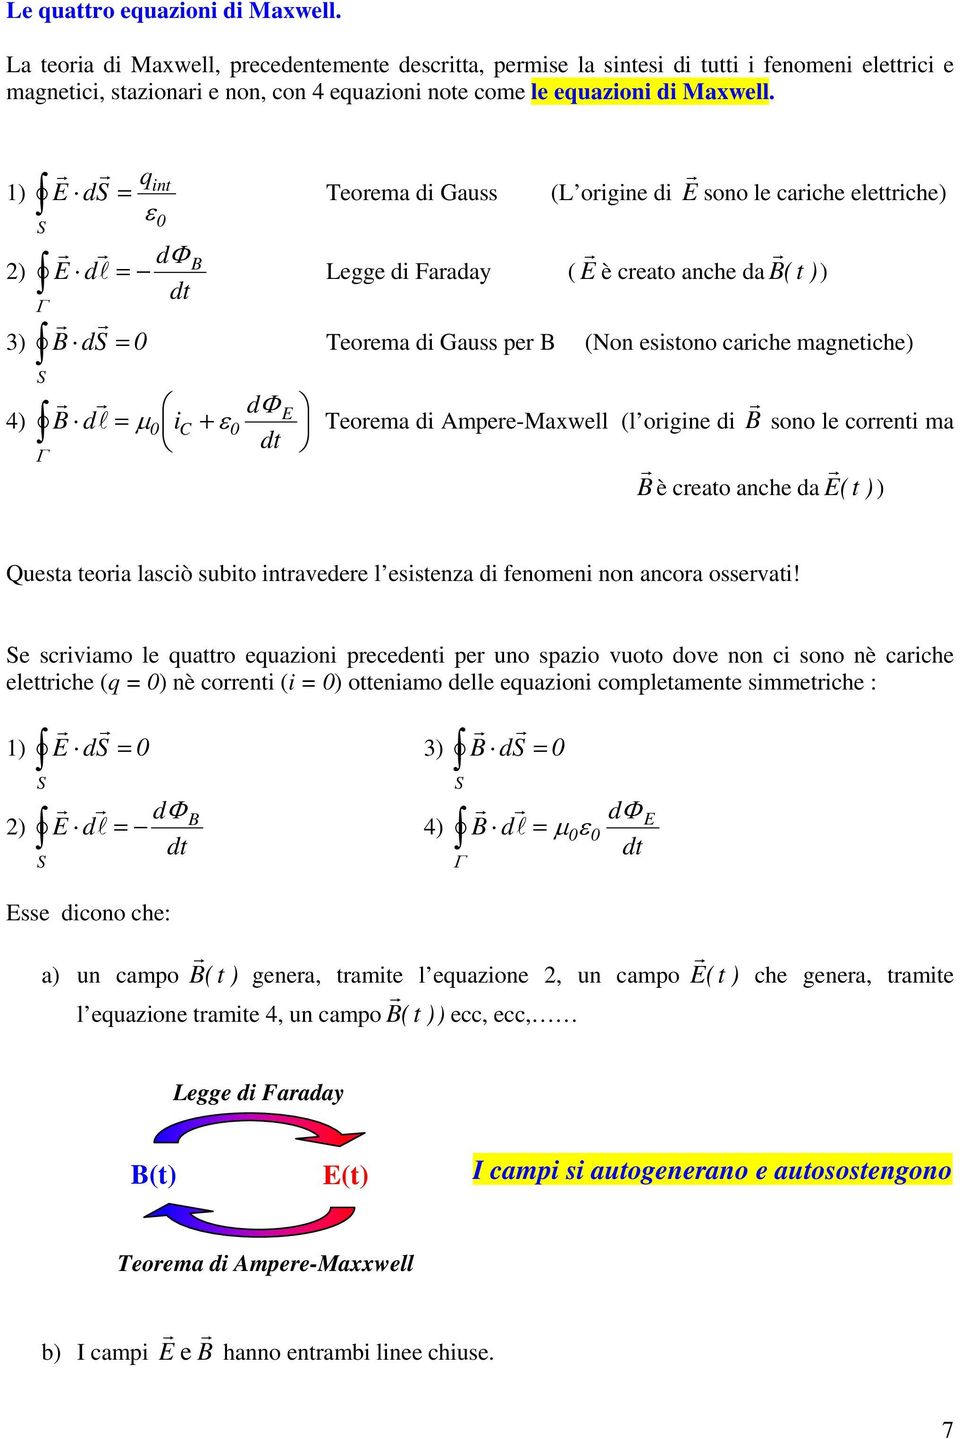 1) ds q int ε S Teoema di Gauss (L oigine di sono le caiche elettiche) ) Legge di Faaday ( è ceato anche da ( t )) 3) ds Teoema di Gauss pe (Non esistono caiche magnetiche) S 4) μ ic + ε Teoema di